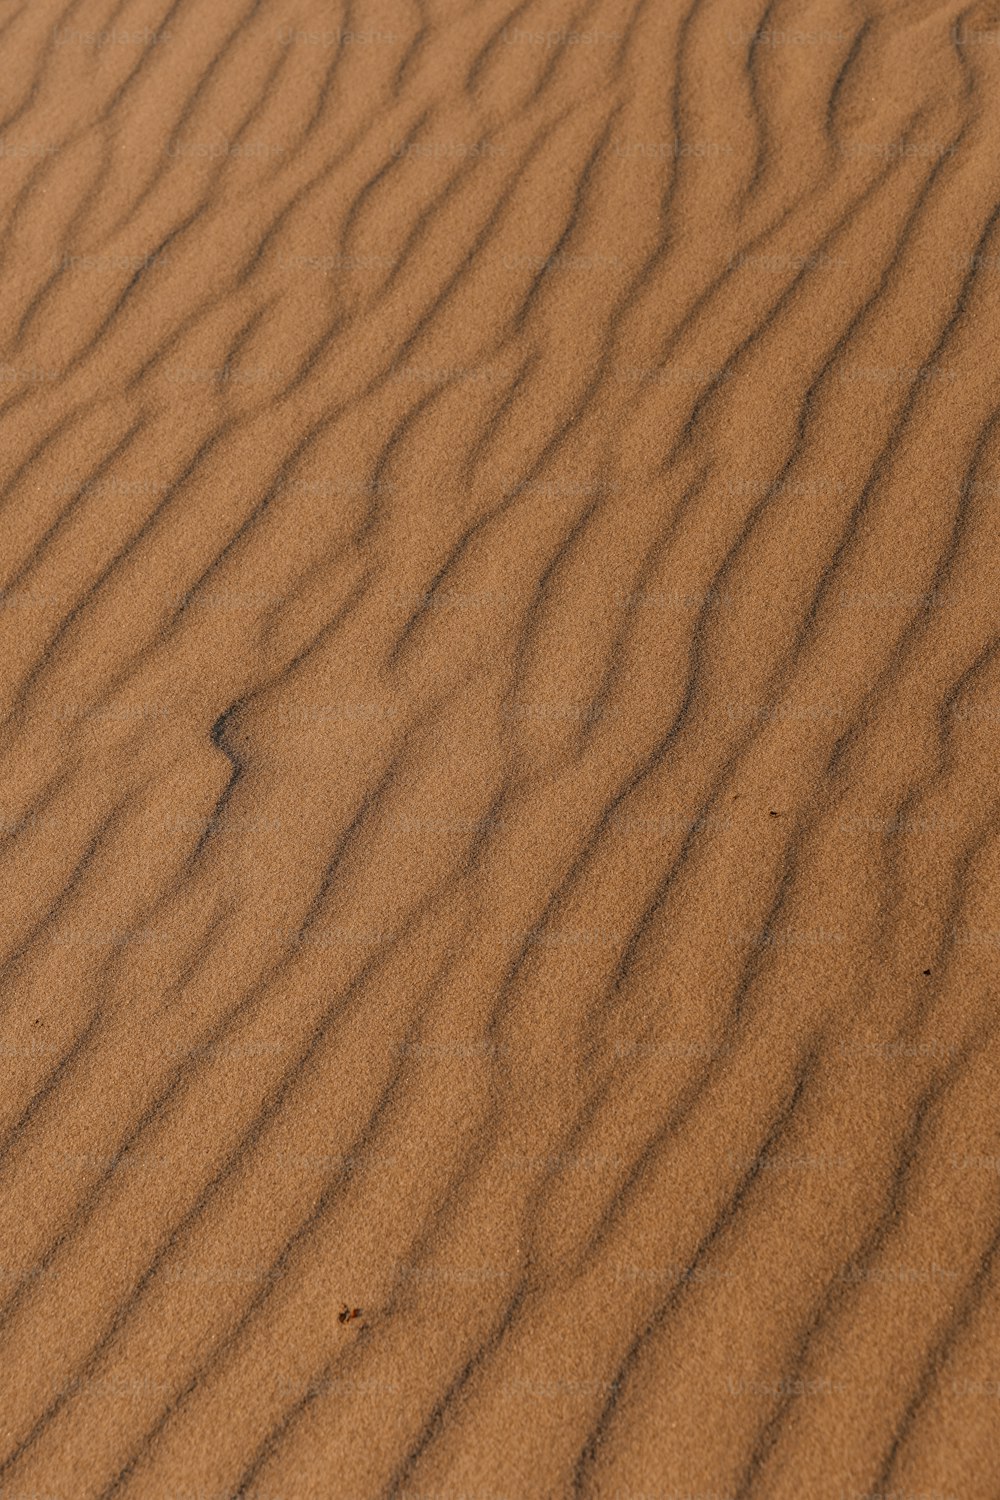 une dune de sable avec une petite parcelle d’herbe qui en sort